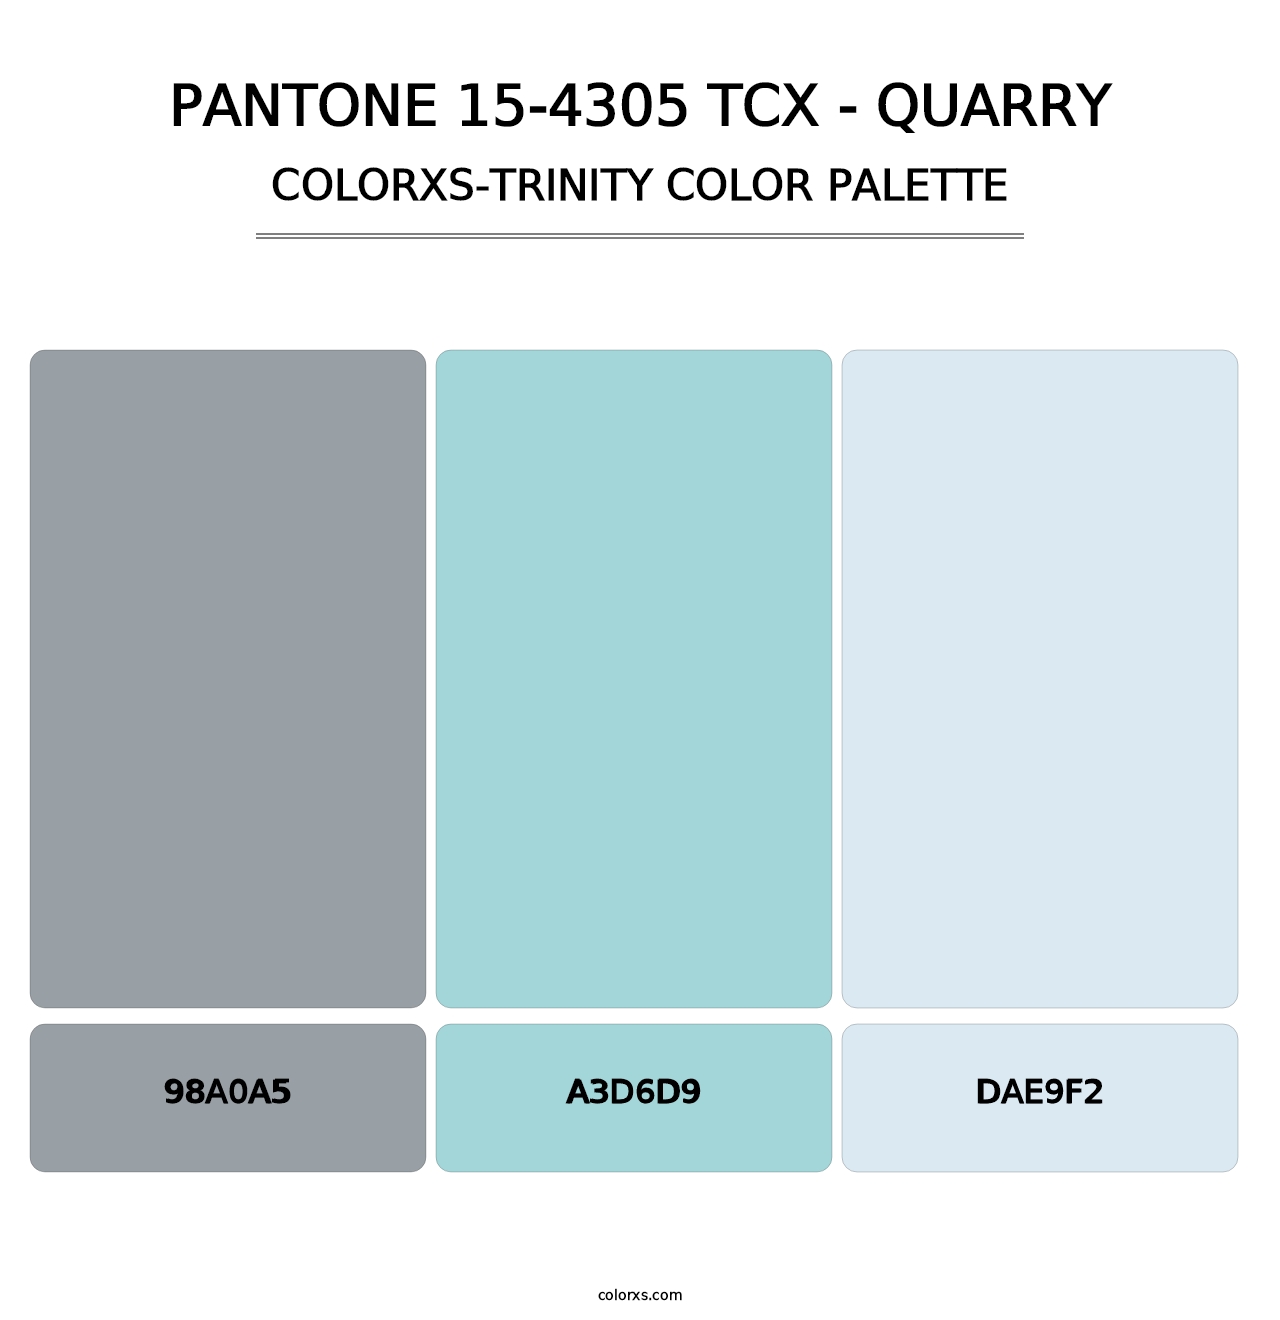 PANTONE 15-4305 TCX - Quarry - Colorxs Trinity Palette